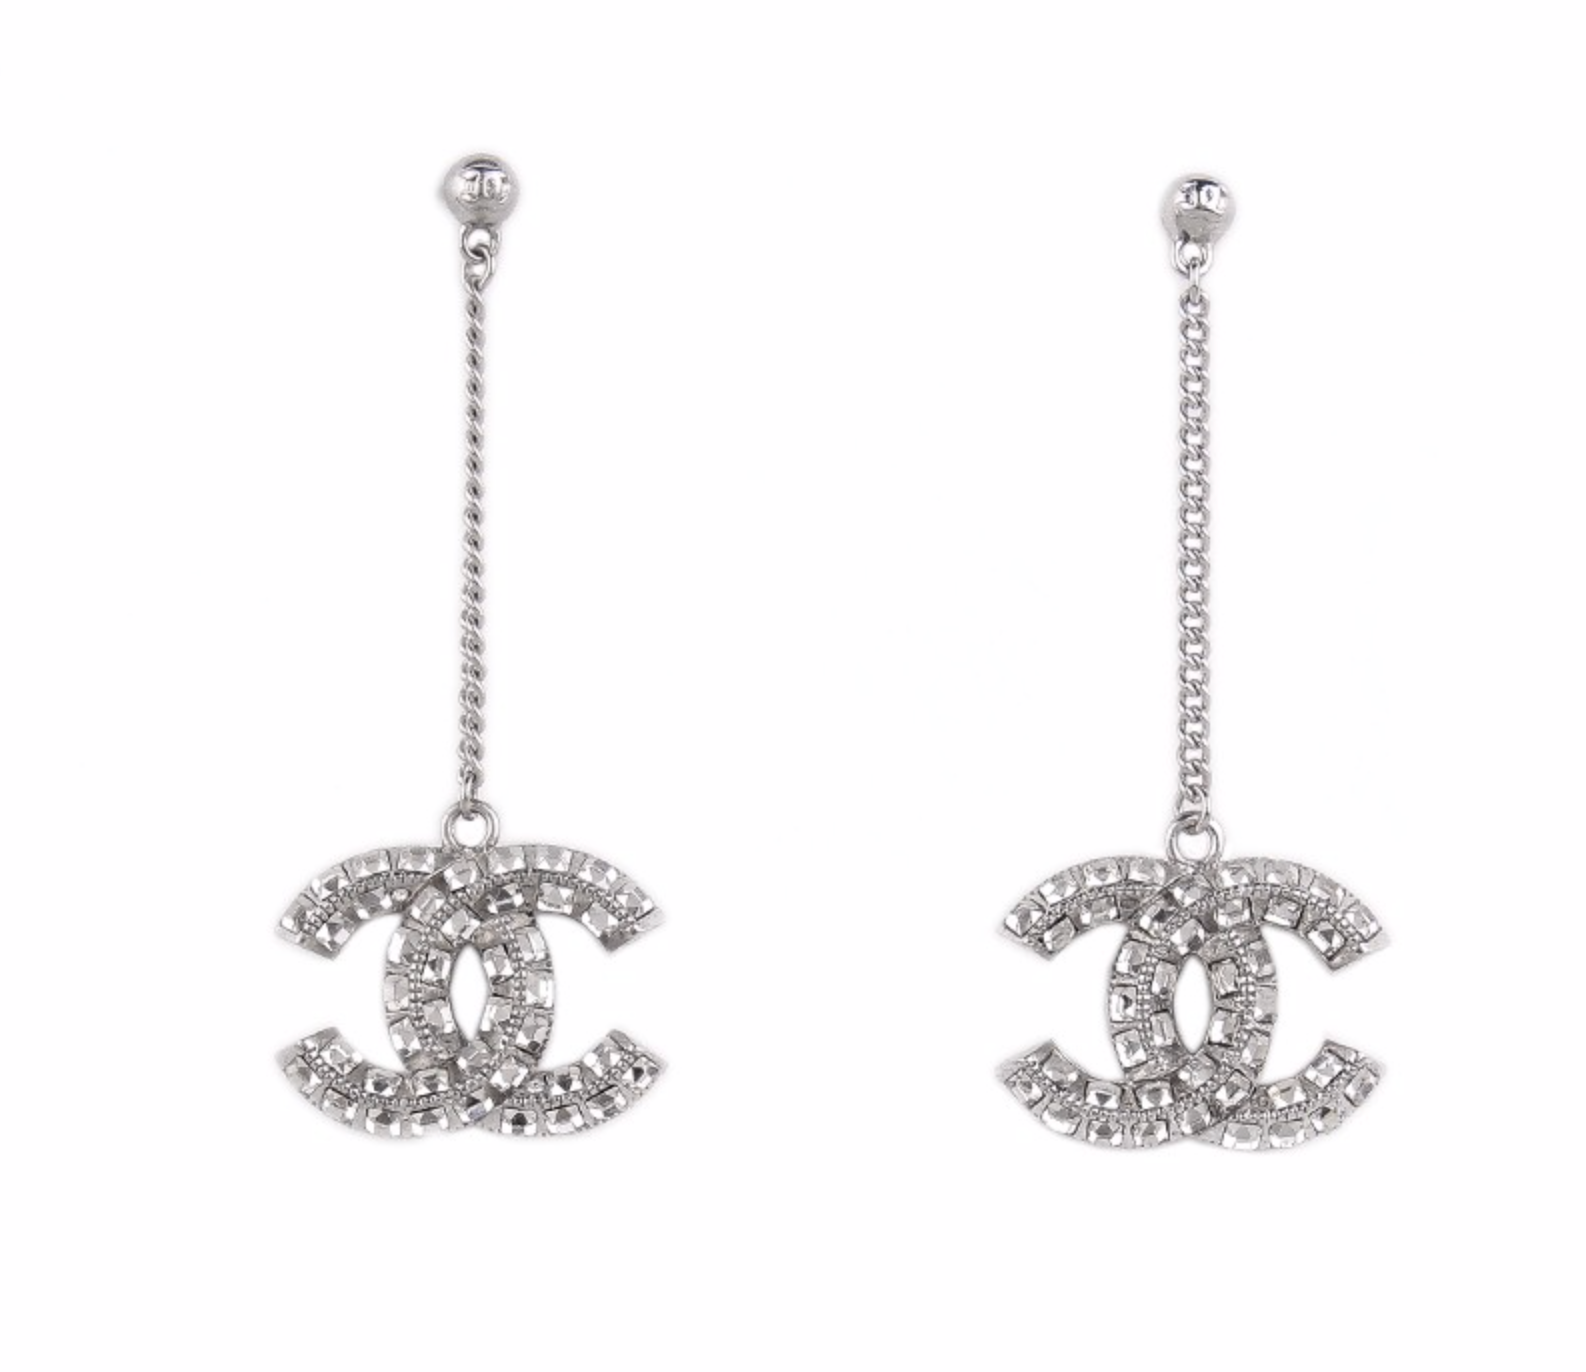 Emerald Chanel earrings - Gem